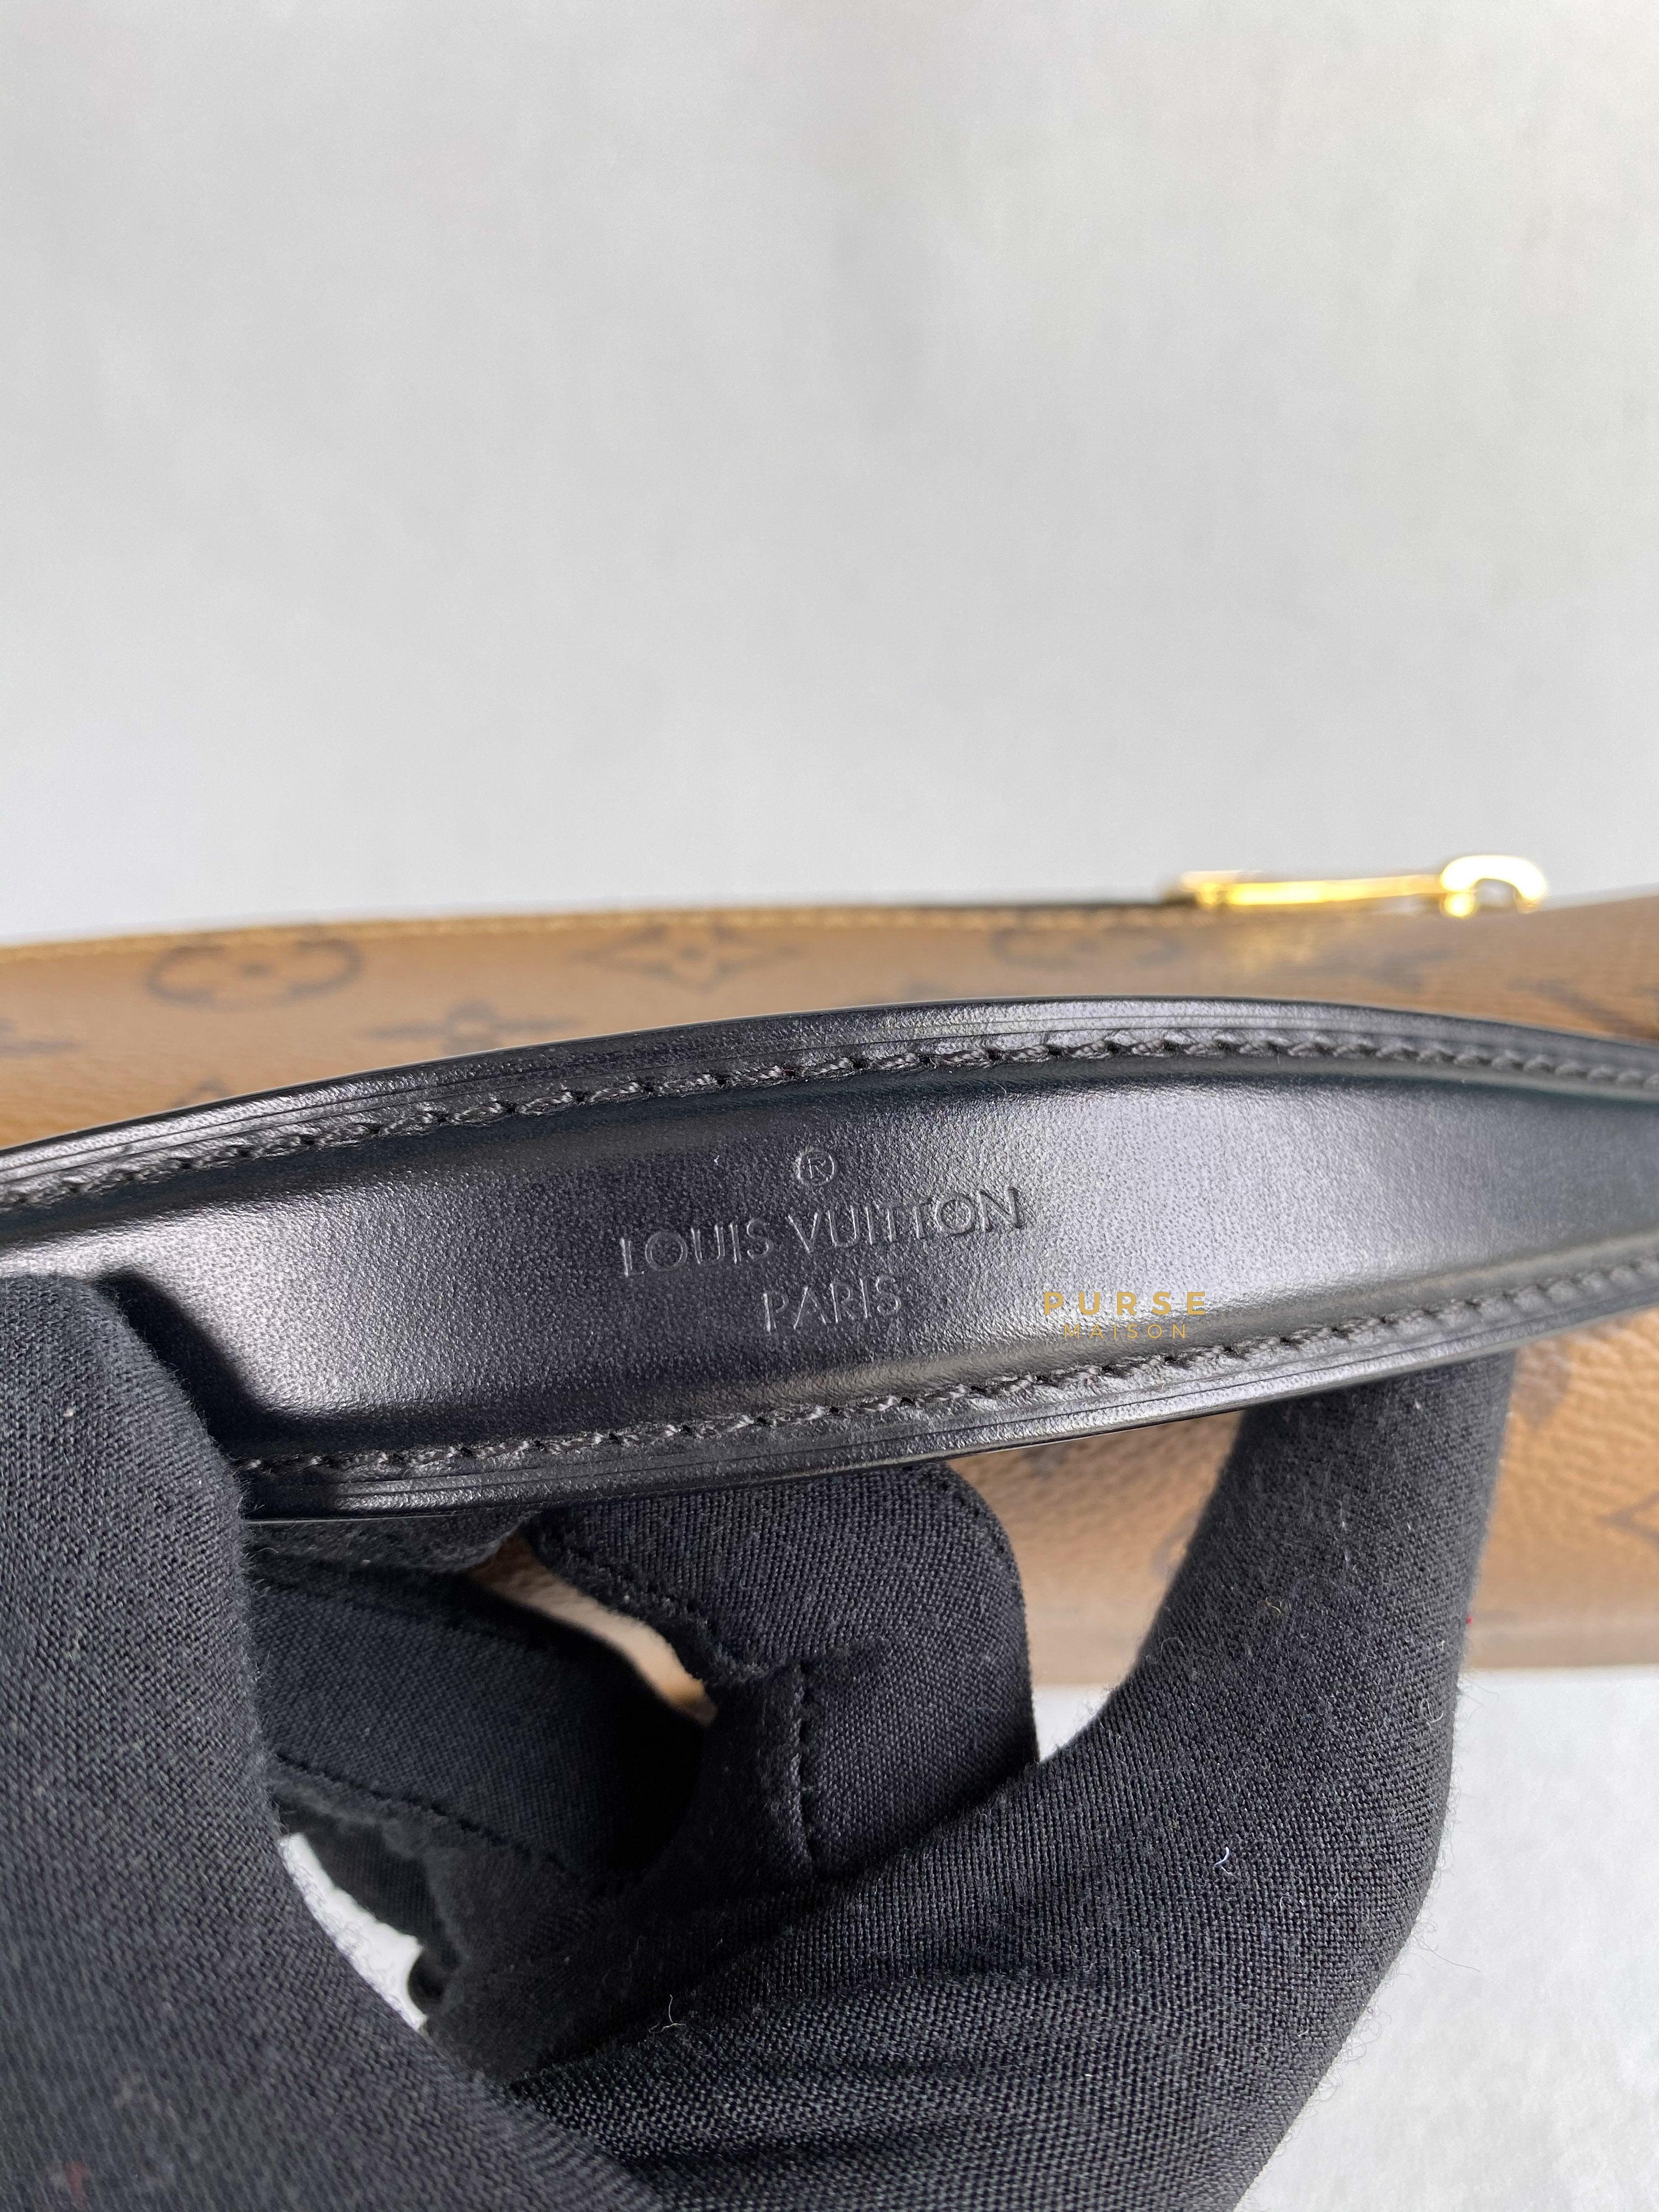 Louis Vuitton Pochette Metis in Reverse Monogram (Date code: DR1179) | Purse Maison Luxury Bags Shop